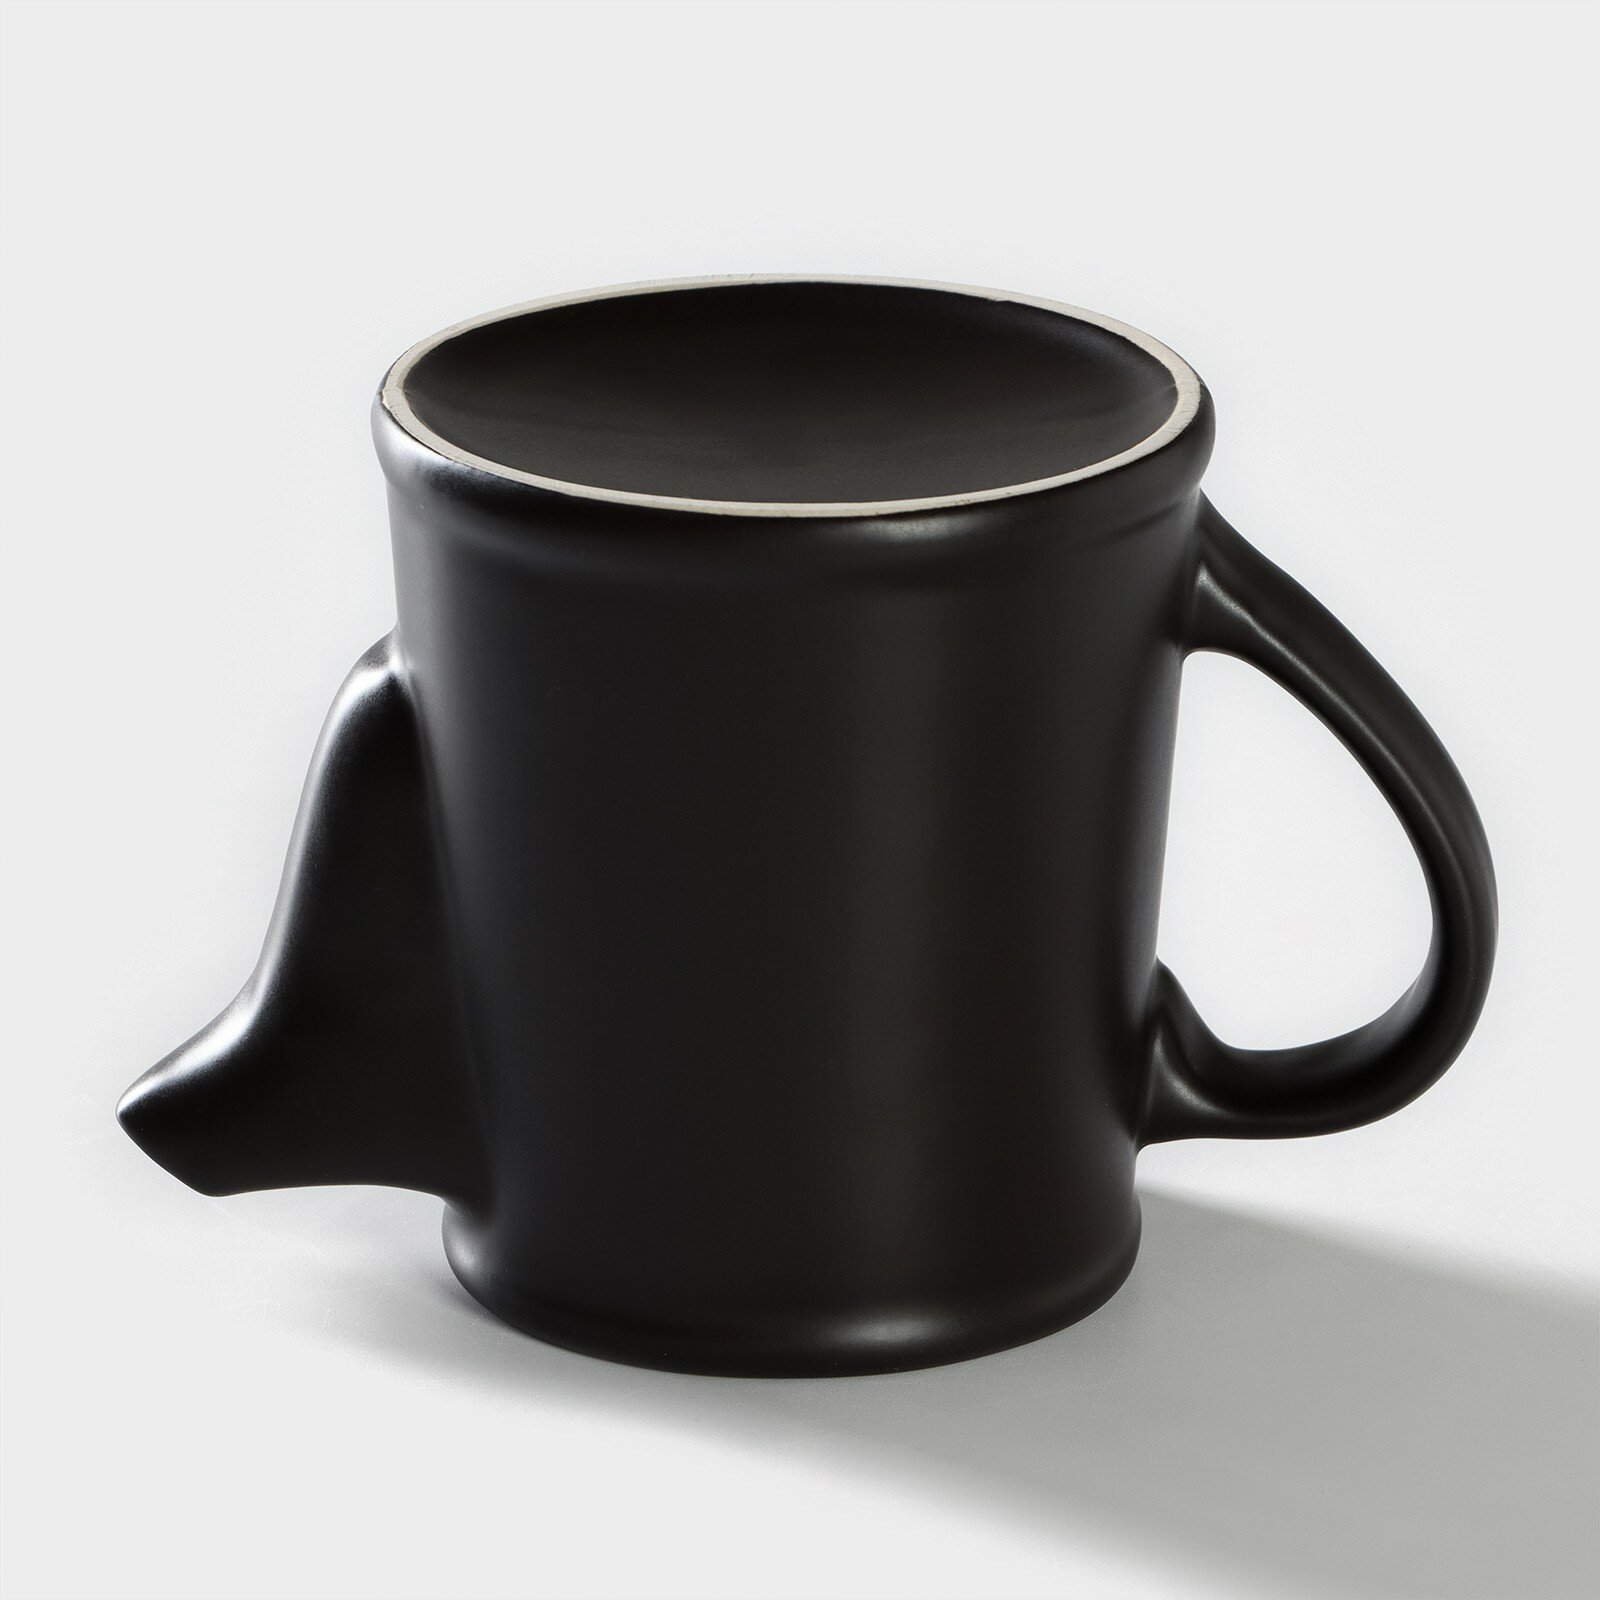 Чайник "Carbone", заварочный, фарфоровый, h = 14,5 см, 500 мл, цвет черный